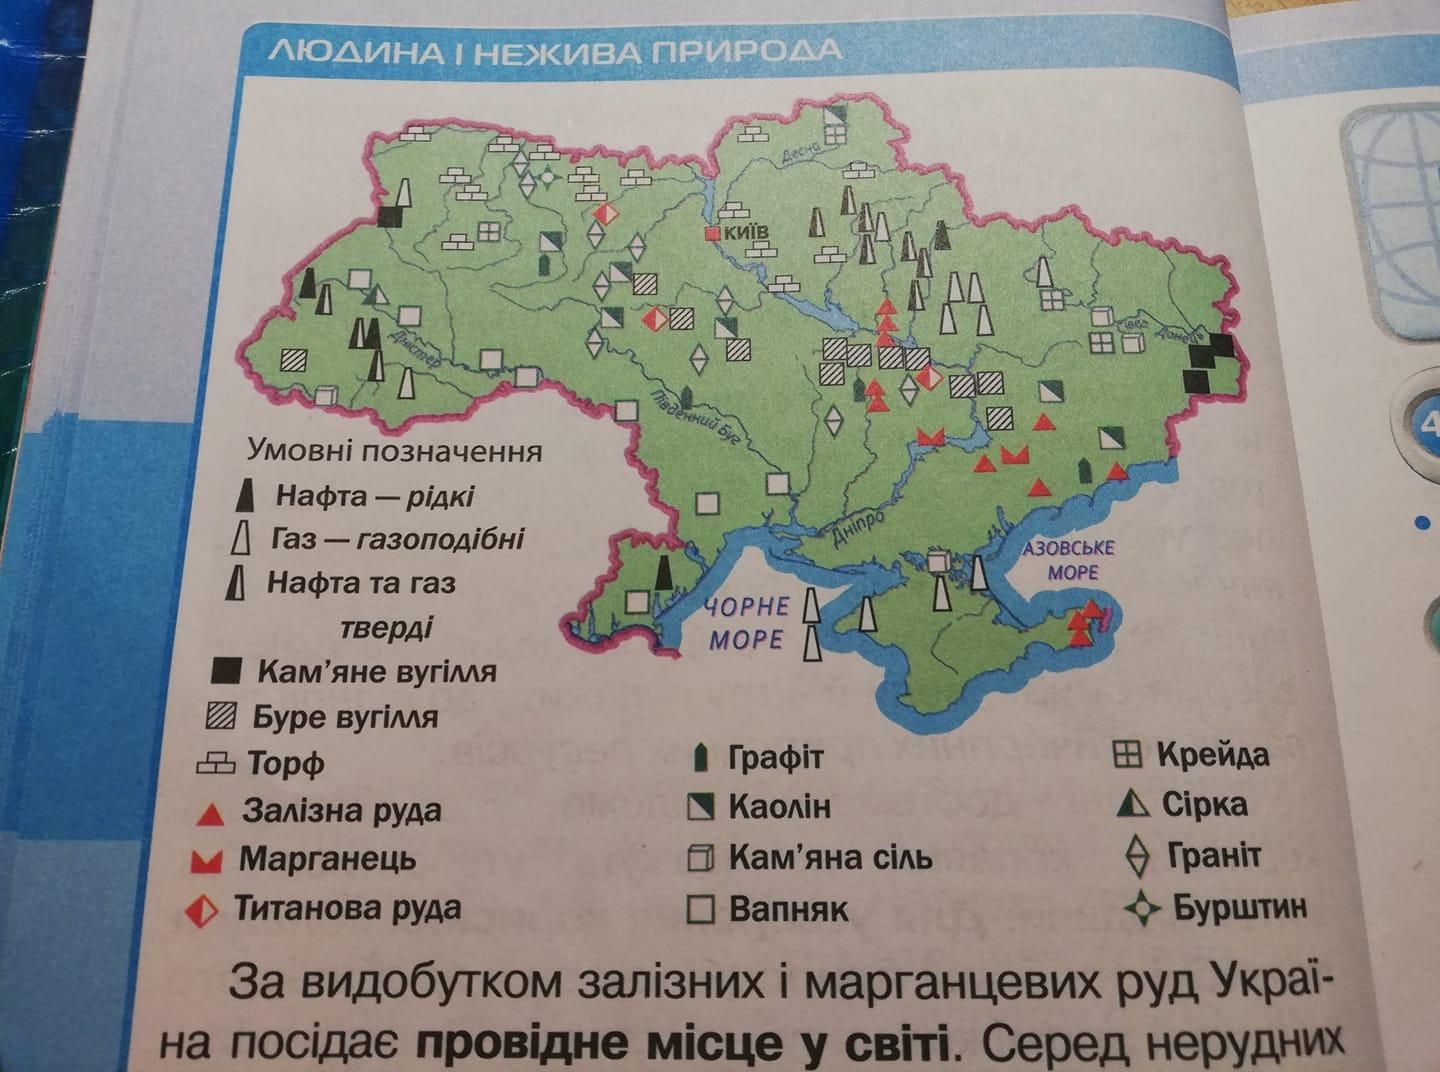 Фейл у шкільному підручнику: учням пропонують розказати про "домашні" гірські породи - Україна новини - Освіта